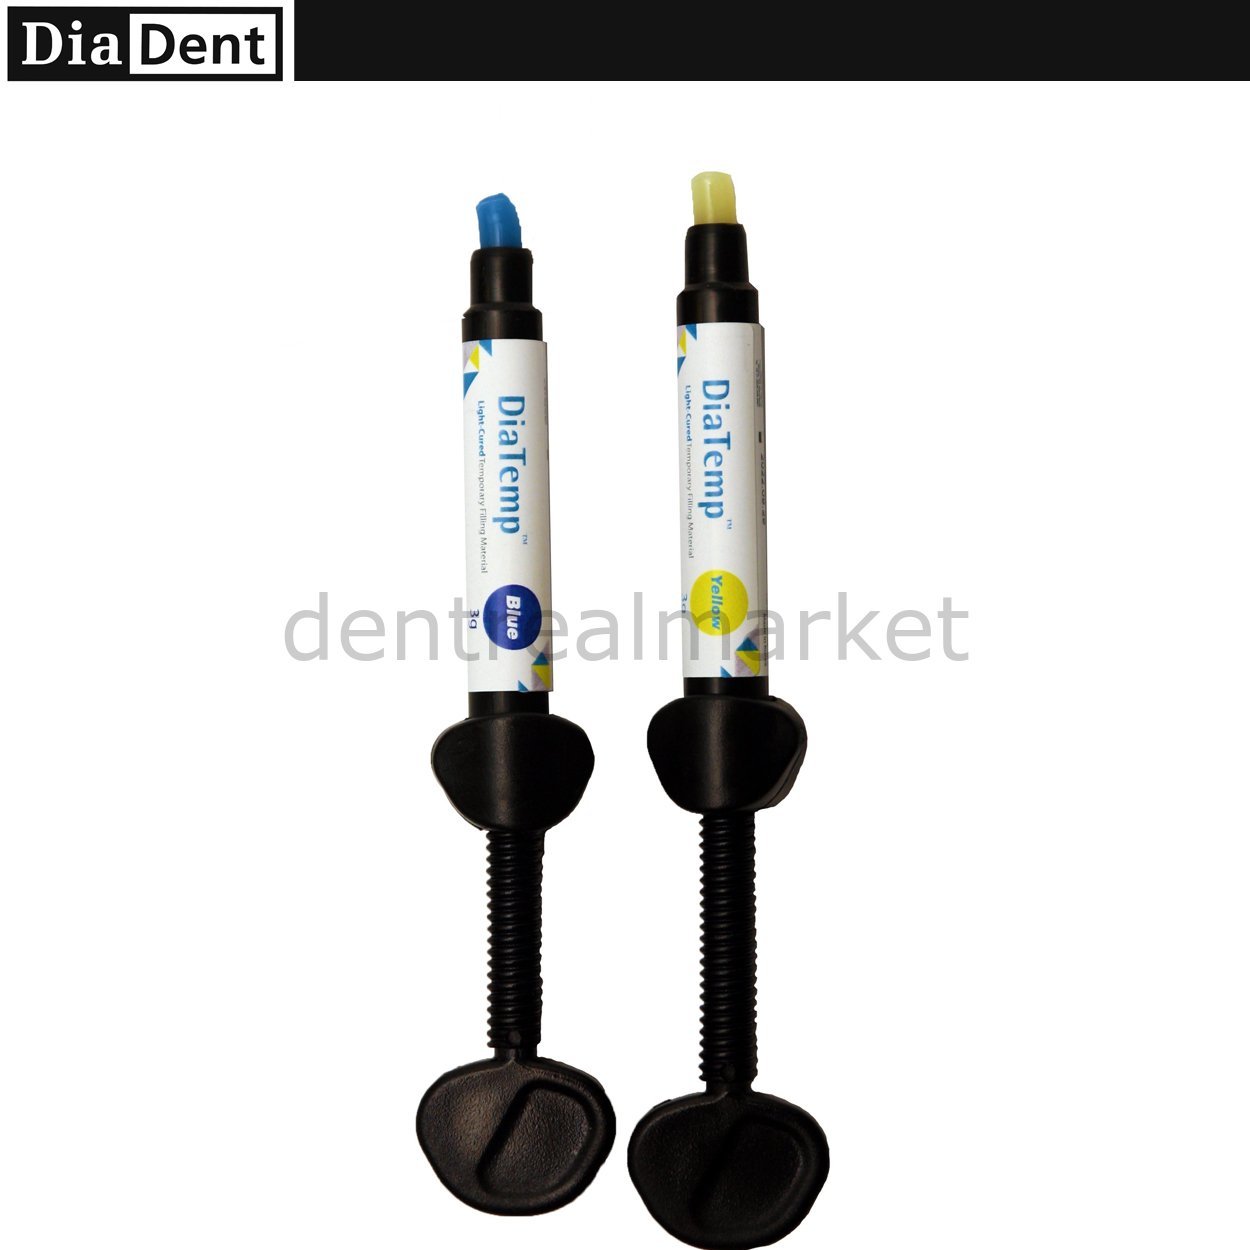 DentrealStore - Diadent DiaTemp Light-Cured Temporary Restorative Material 3*3 g